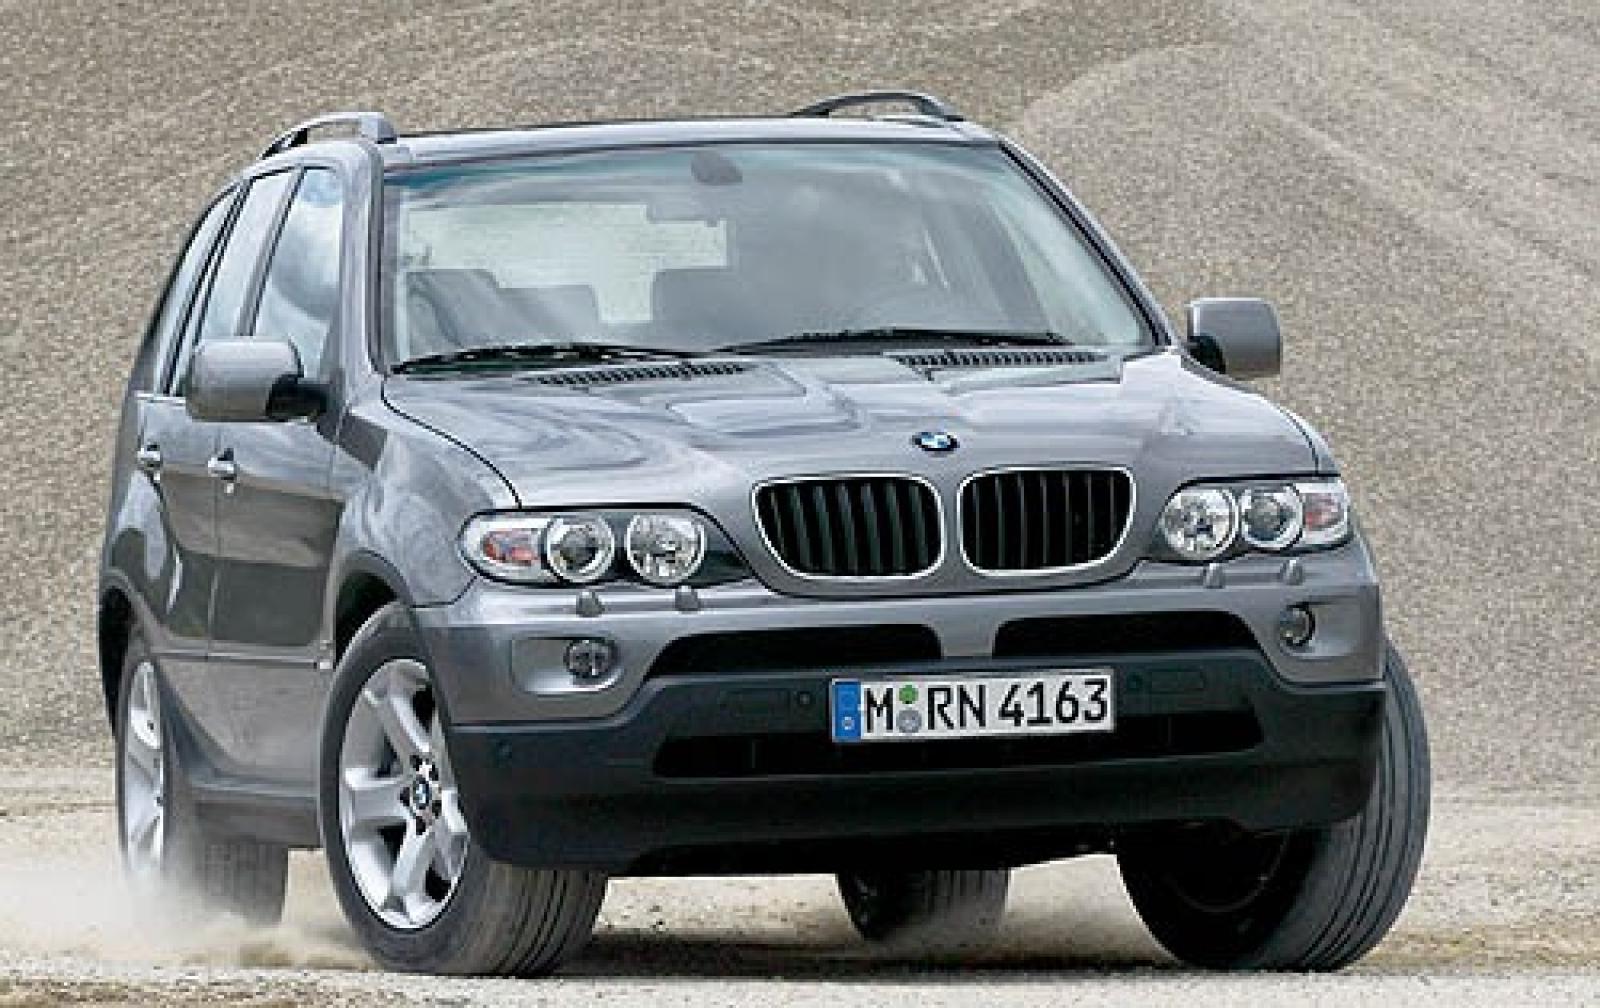 Bmw x5 привод. BMW x5 2006. БМВ x5 2006. БМВ х5 2006 года. BMW x5 GPOWER 2006.